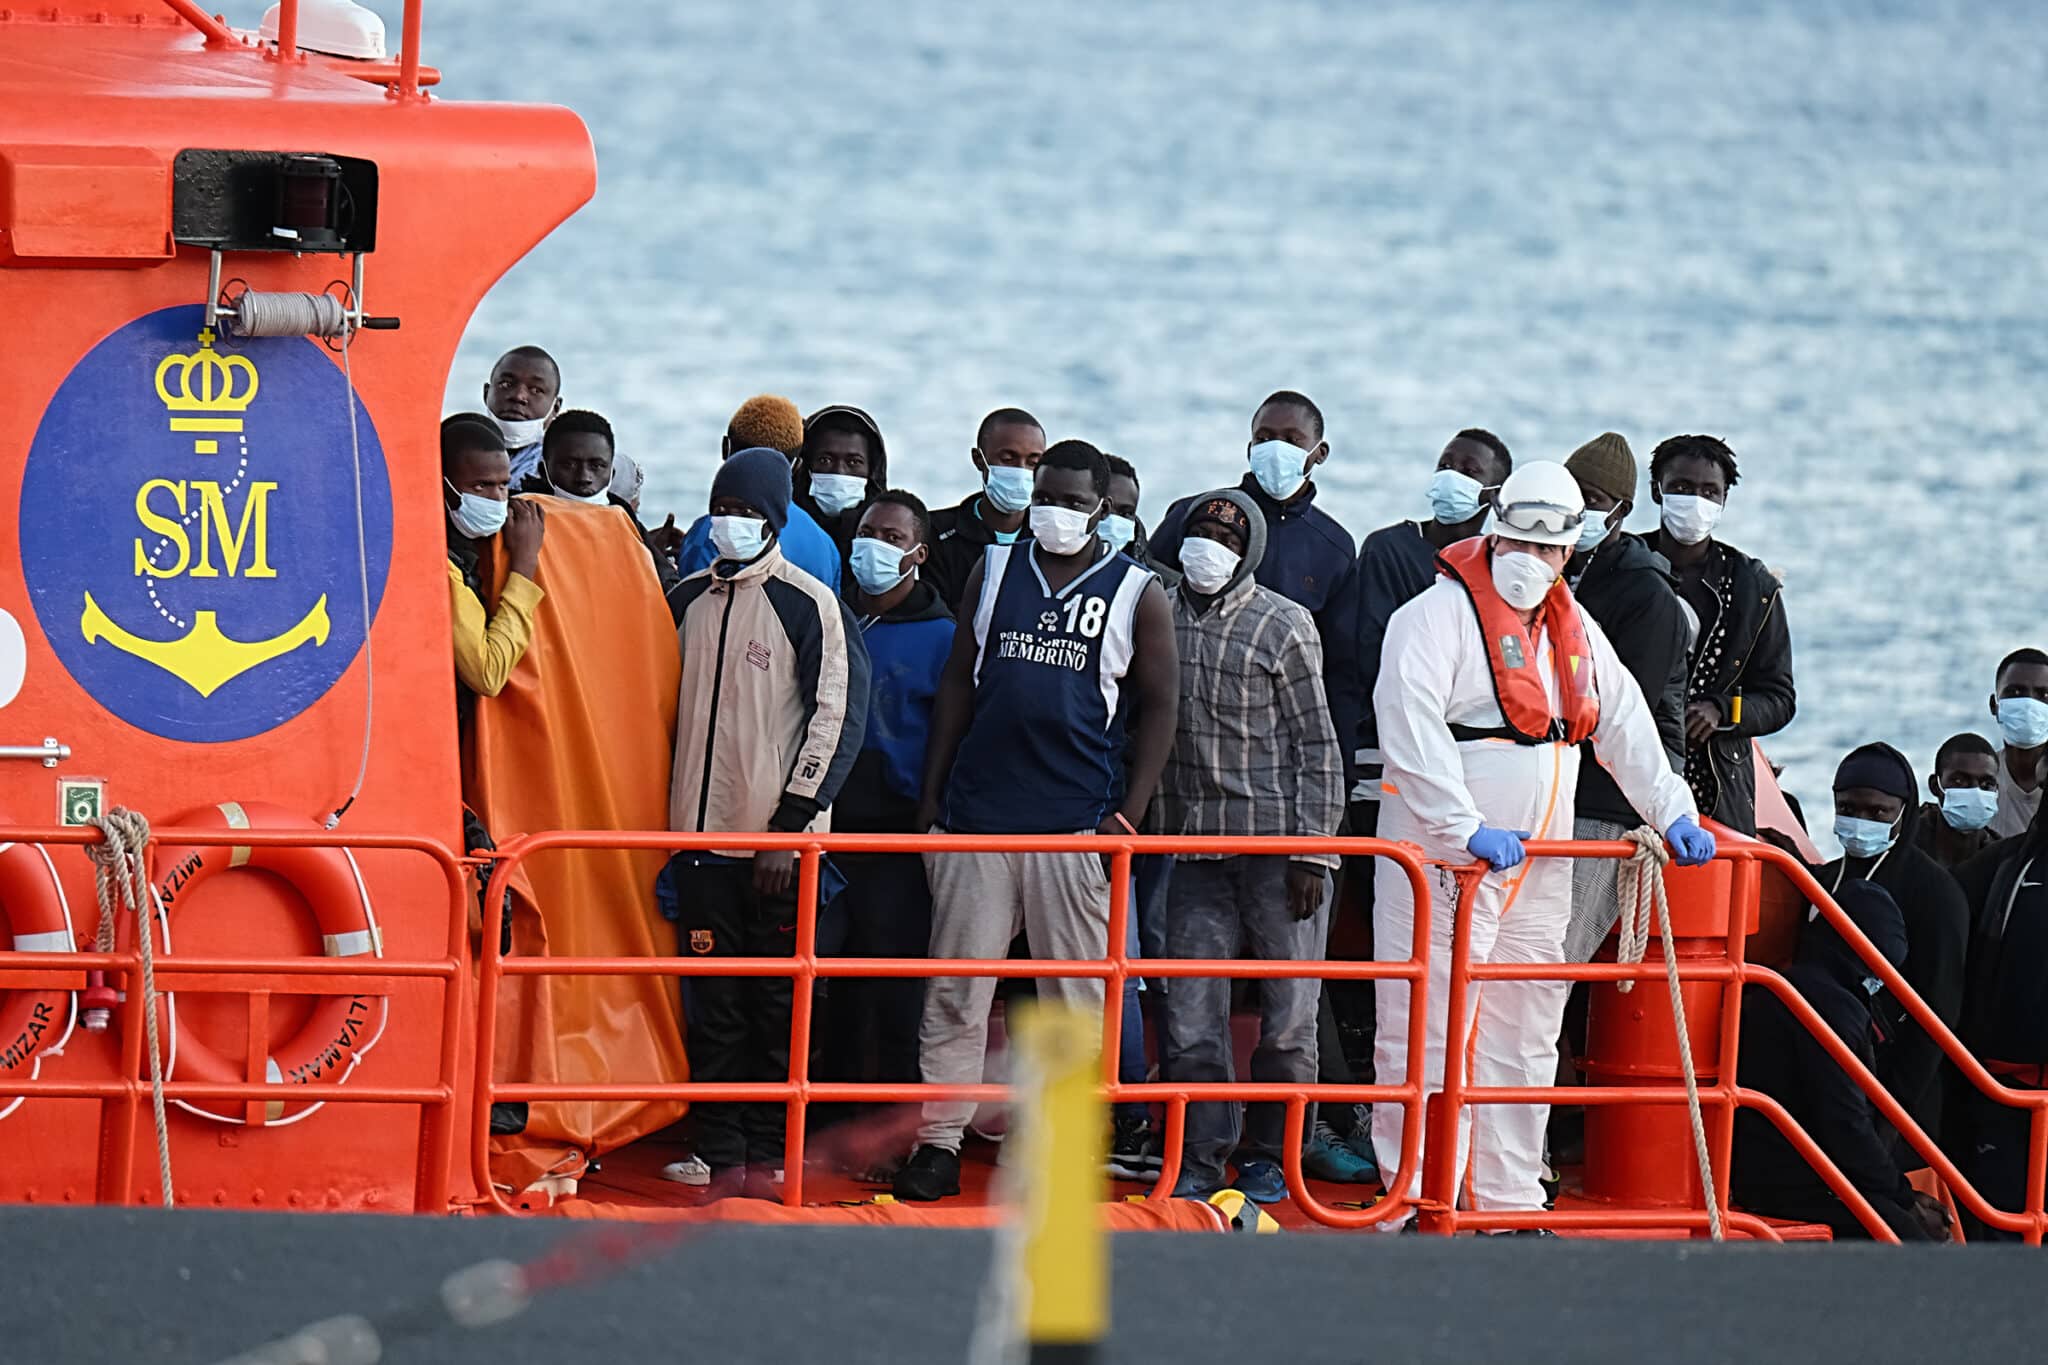 Migrantes llegan al puerto de Fuerteventura tras ser rescatados por Salvamento Marítimo el pasado 17 de junio.